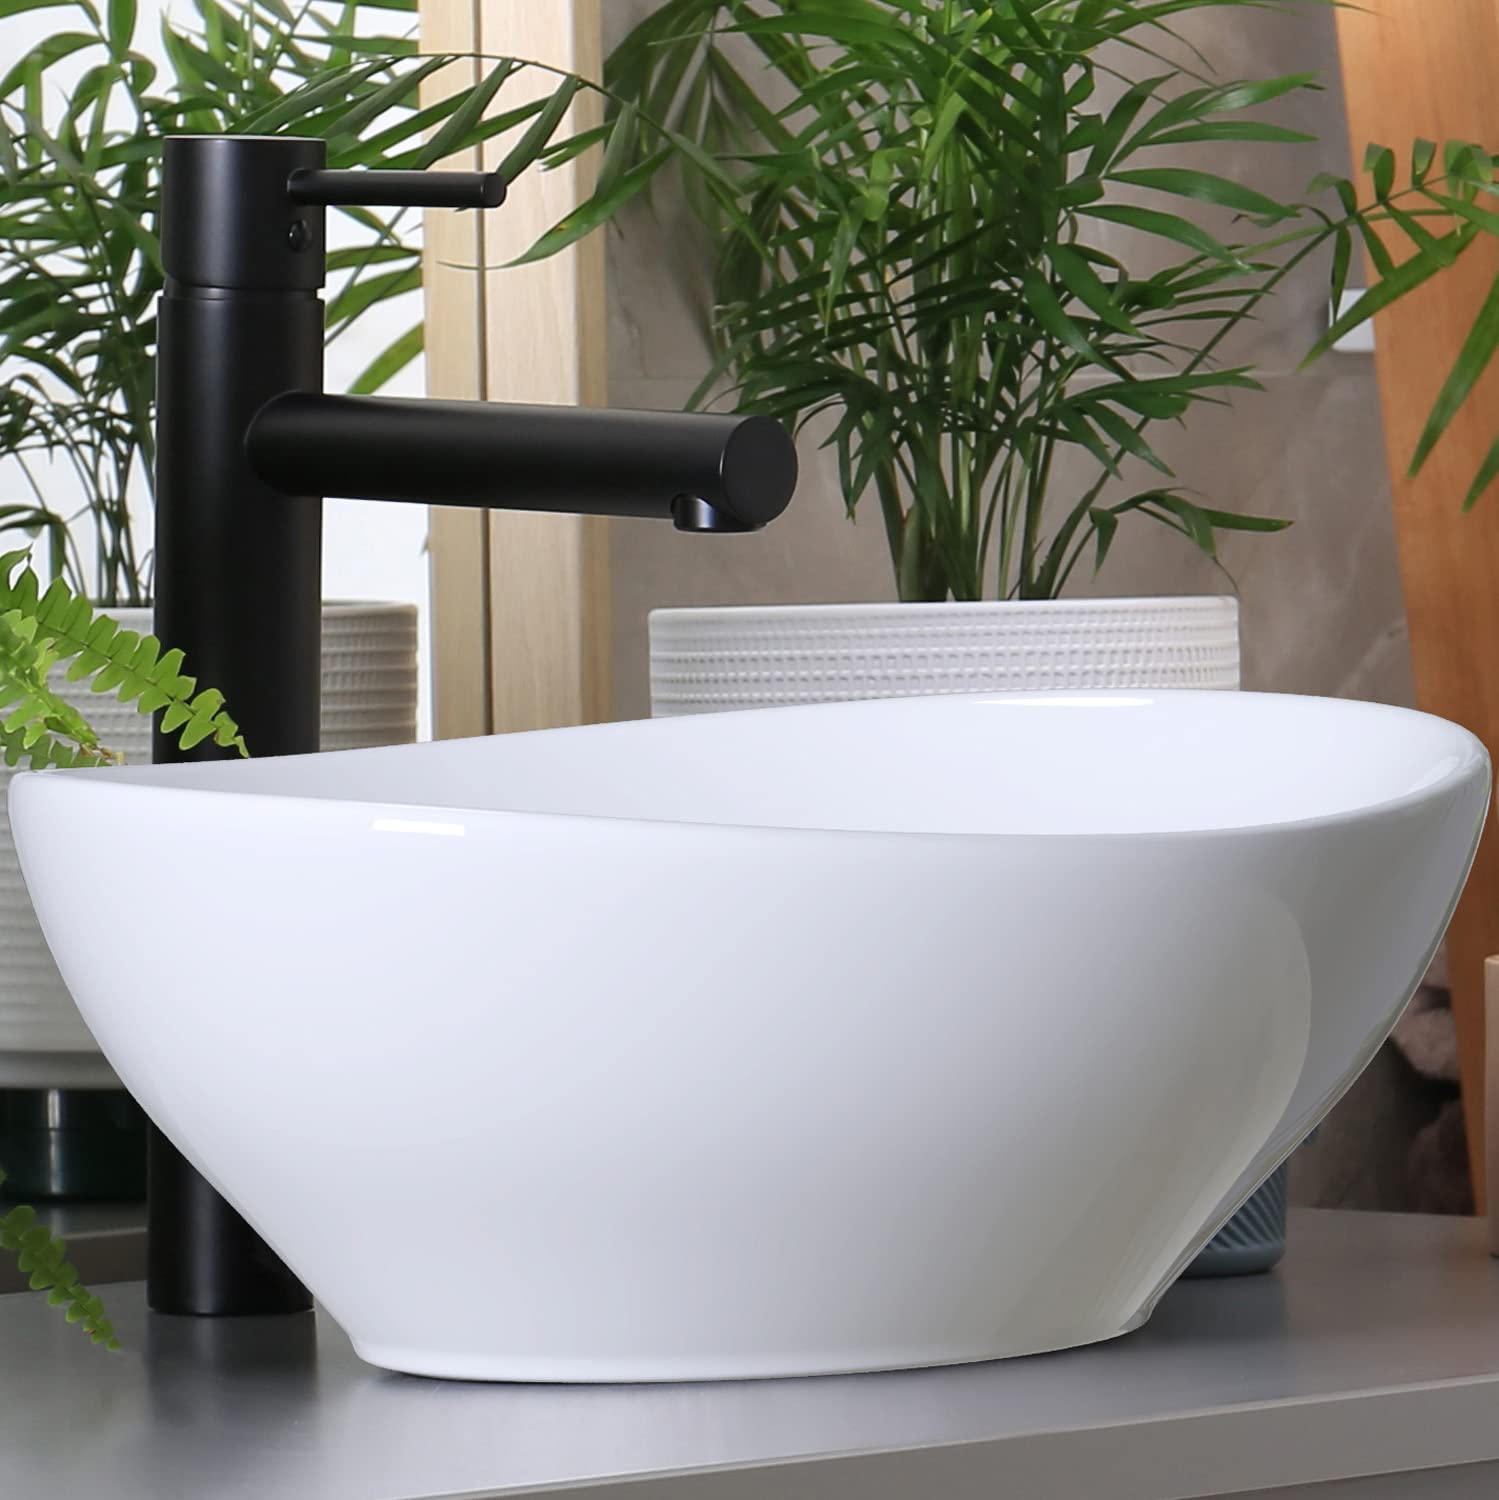 Waschbecken24 | Aufsatzwaschbecken | Ovales Waschbecken ohne Hahnloch | Premium-Qualität | Einfache Installation | Modernes Design (41x33x14cm, Weiß / A99)